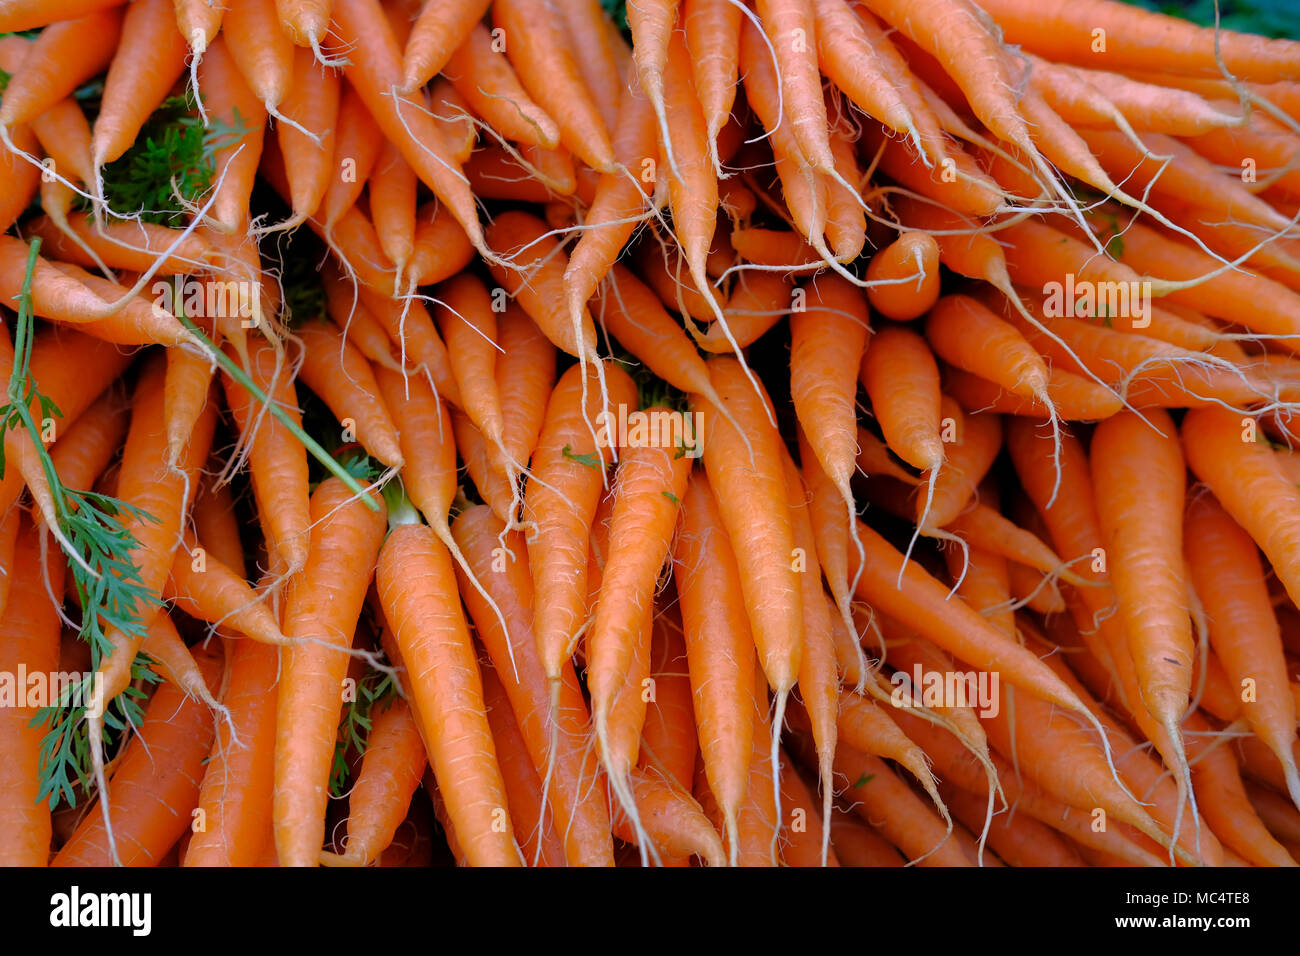 La carota è una radice vegetale, di solito di colore arancione. Le carote sono una forma addomesticata del selvaggio carota, Daucus carota Foto Stock